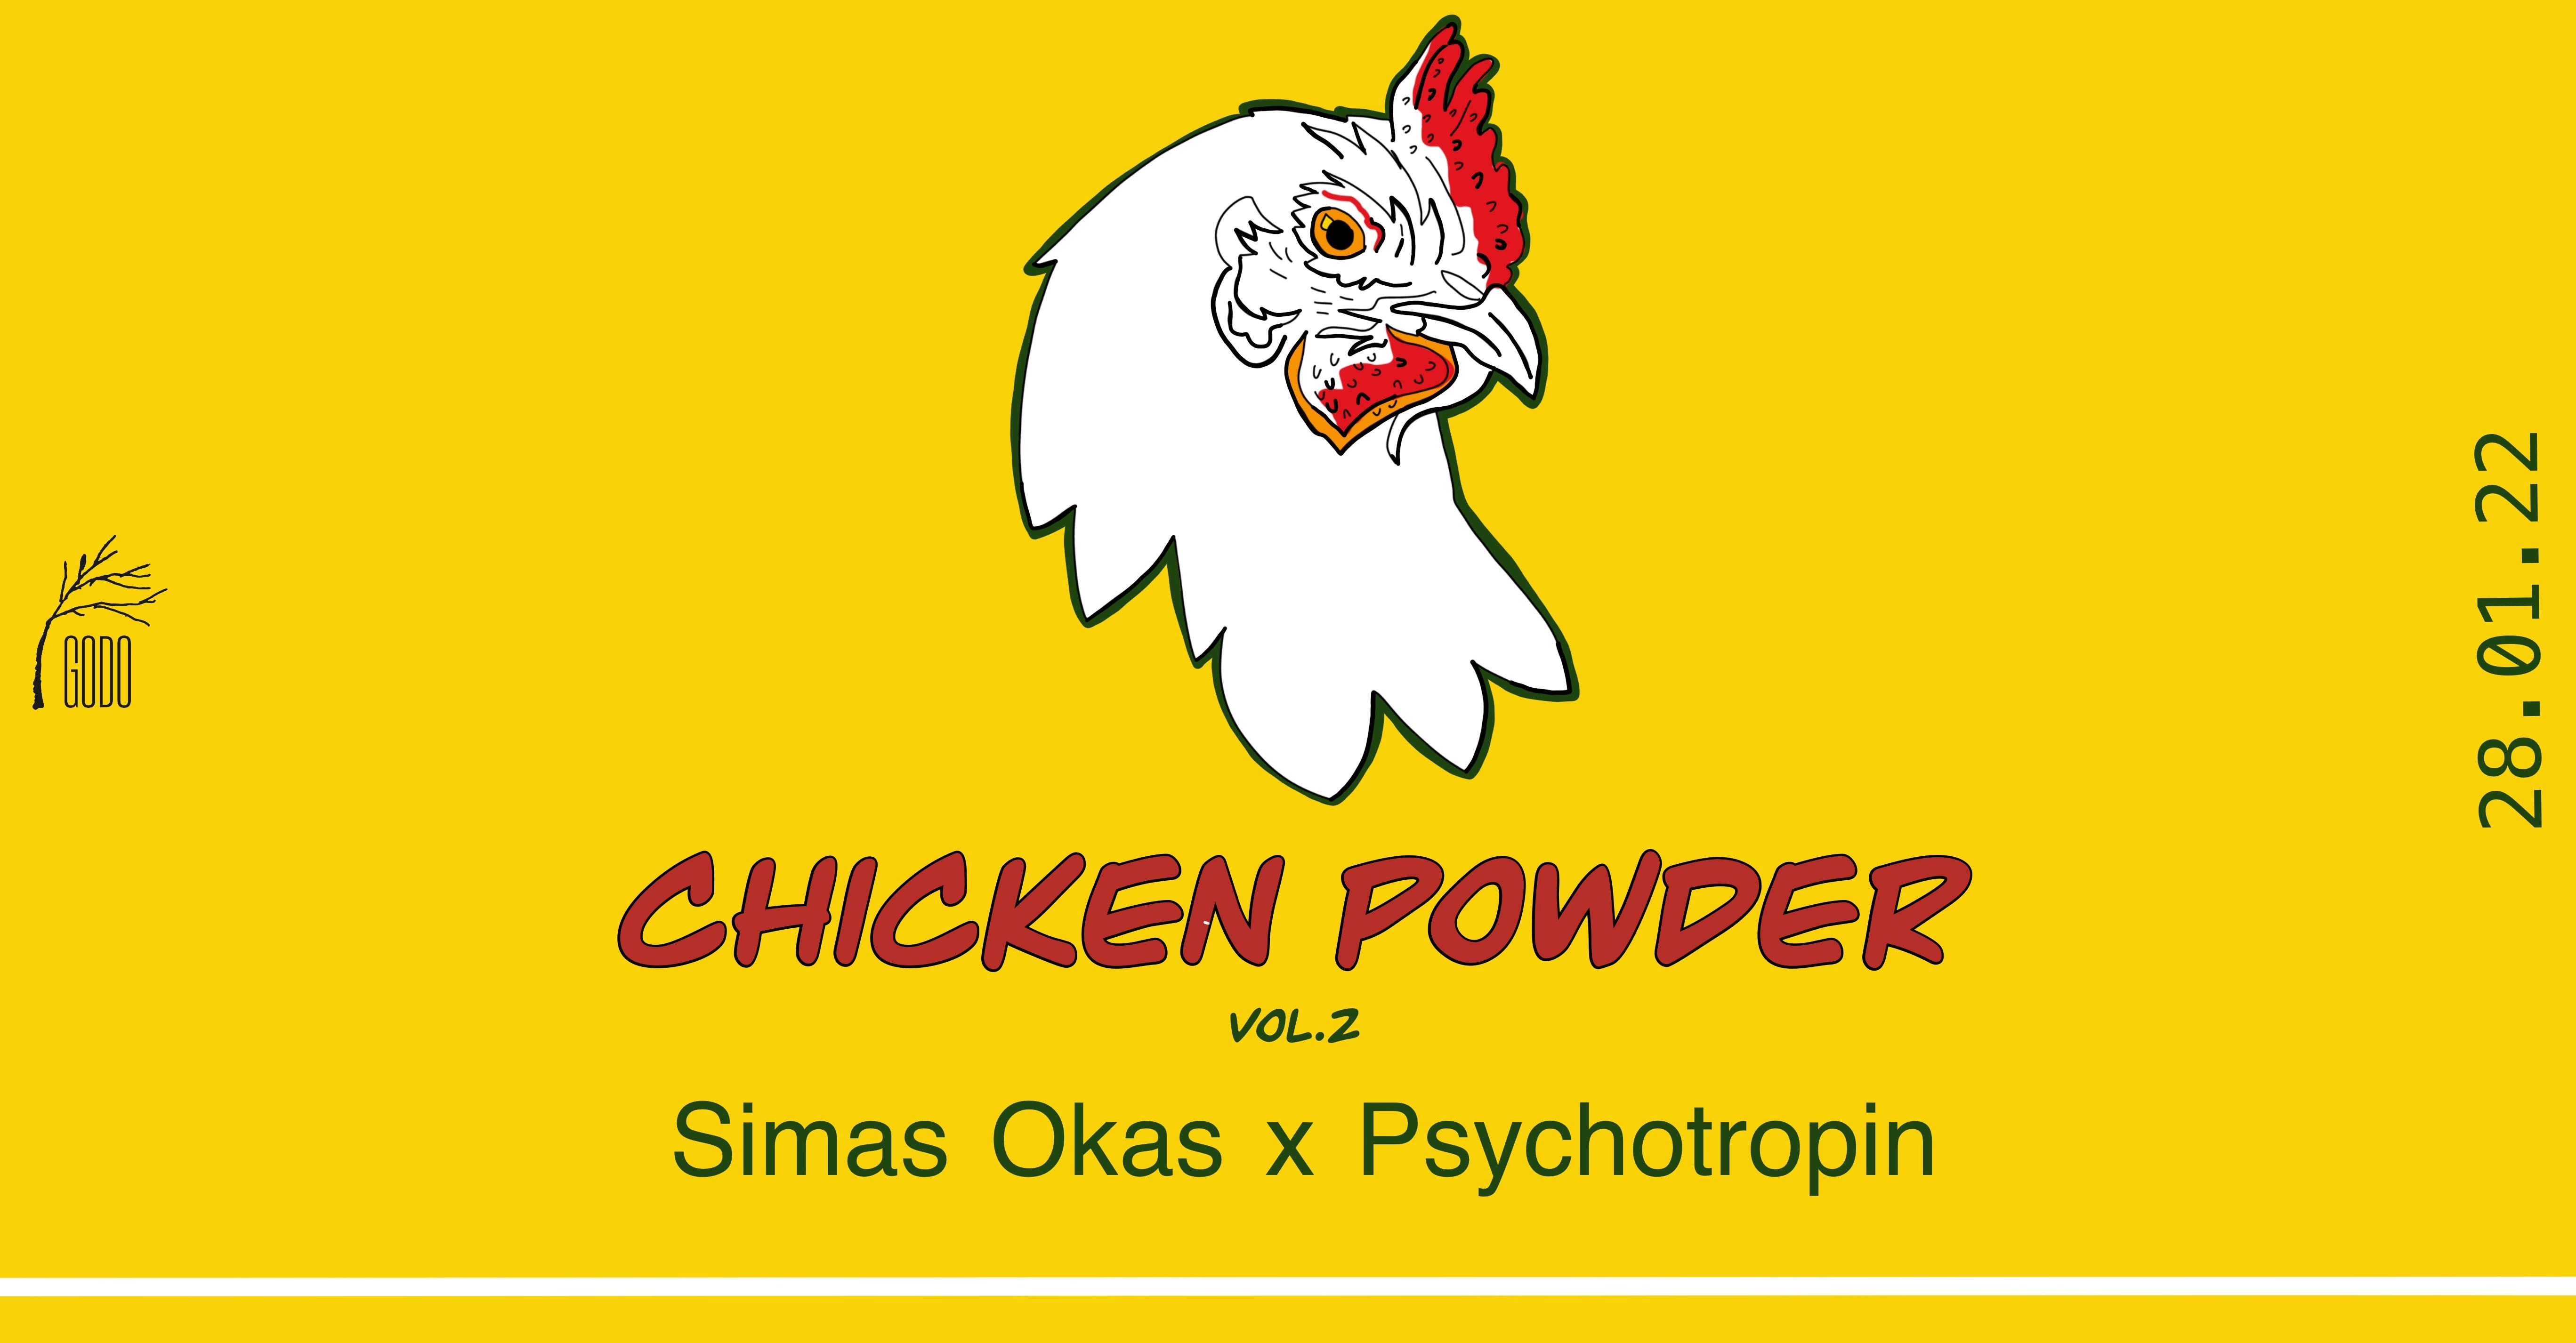 Chicken Powder vol. 2 : Simas Okas x Psychotropin // 01.28